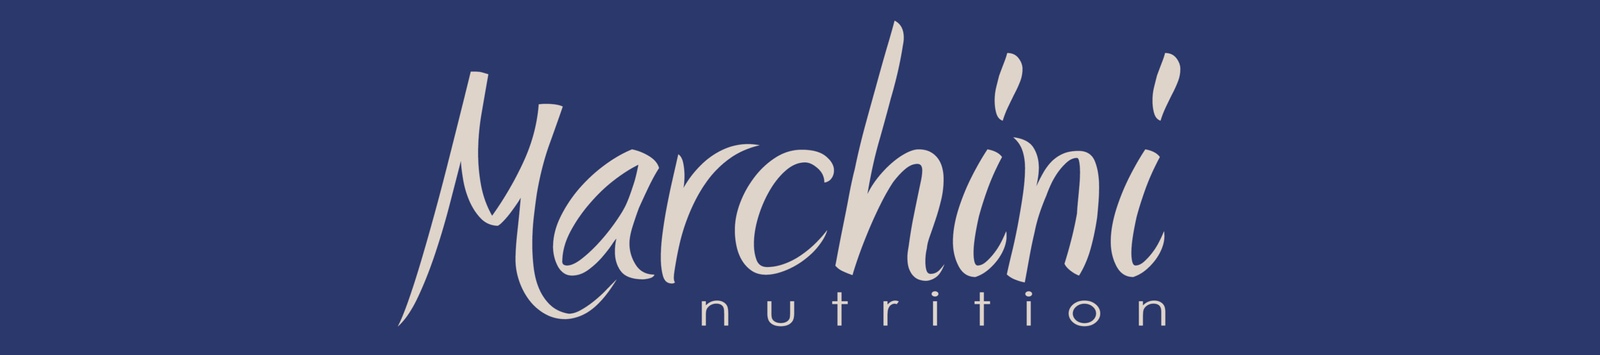 Marchini Nutrition